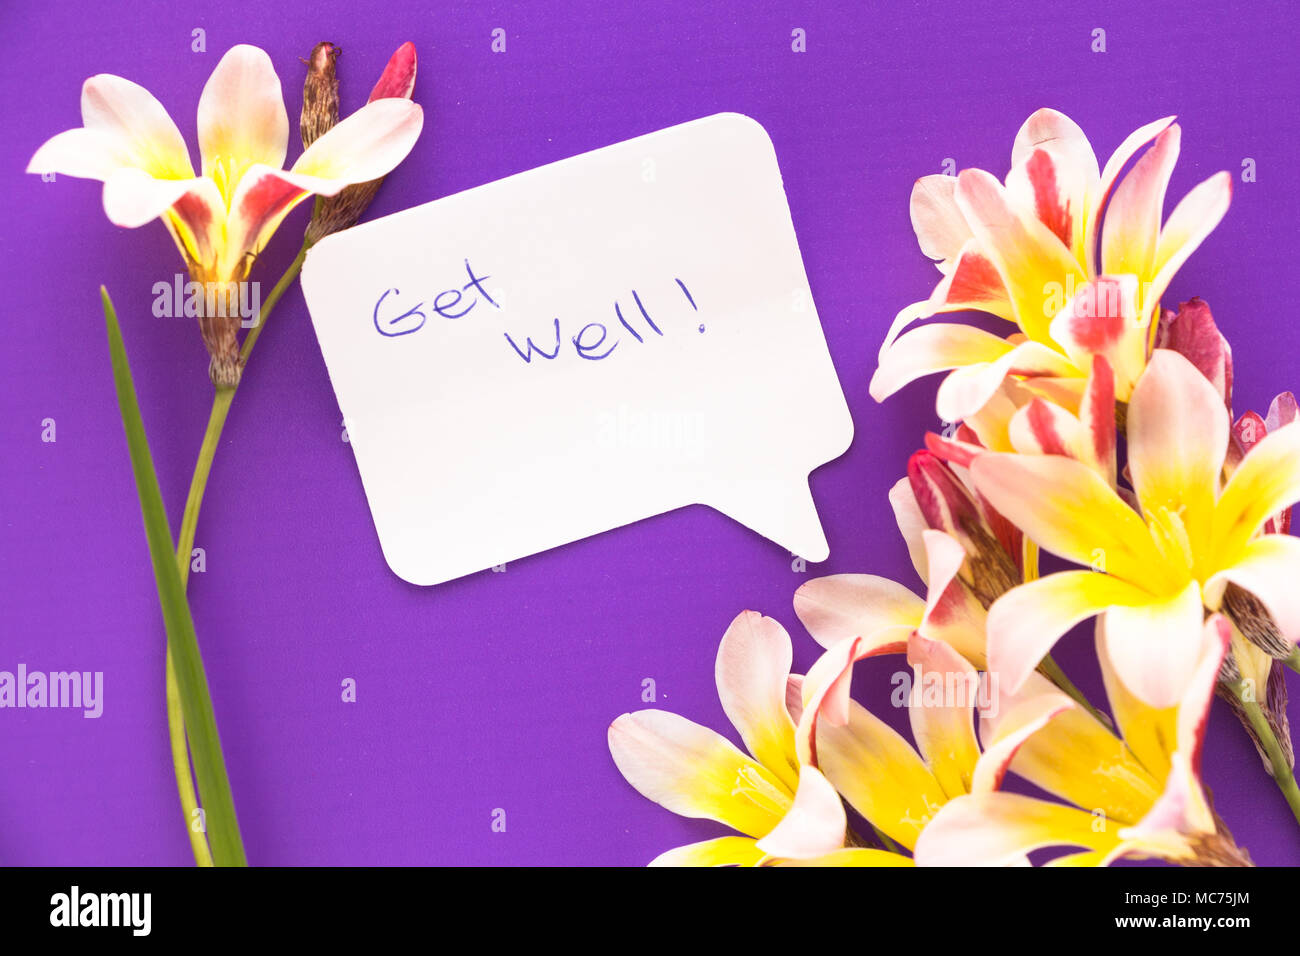 Remarque en forme de coeur avec les mots 'Get Well !' avec des fleurs pourpre sur la surface. Banque D'Images